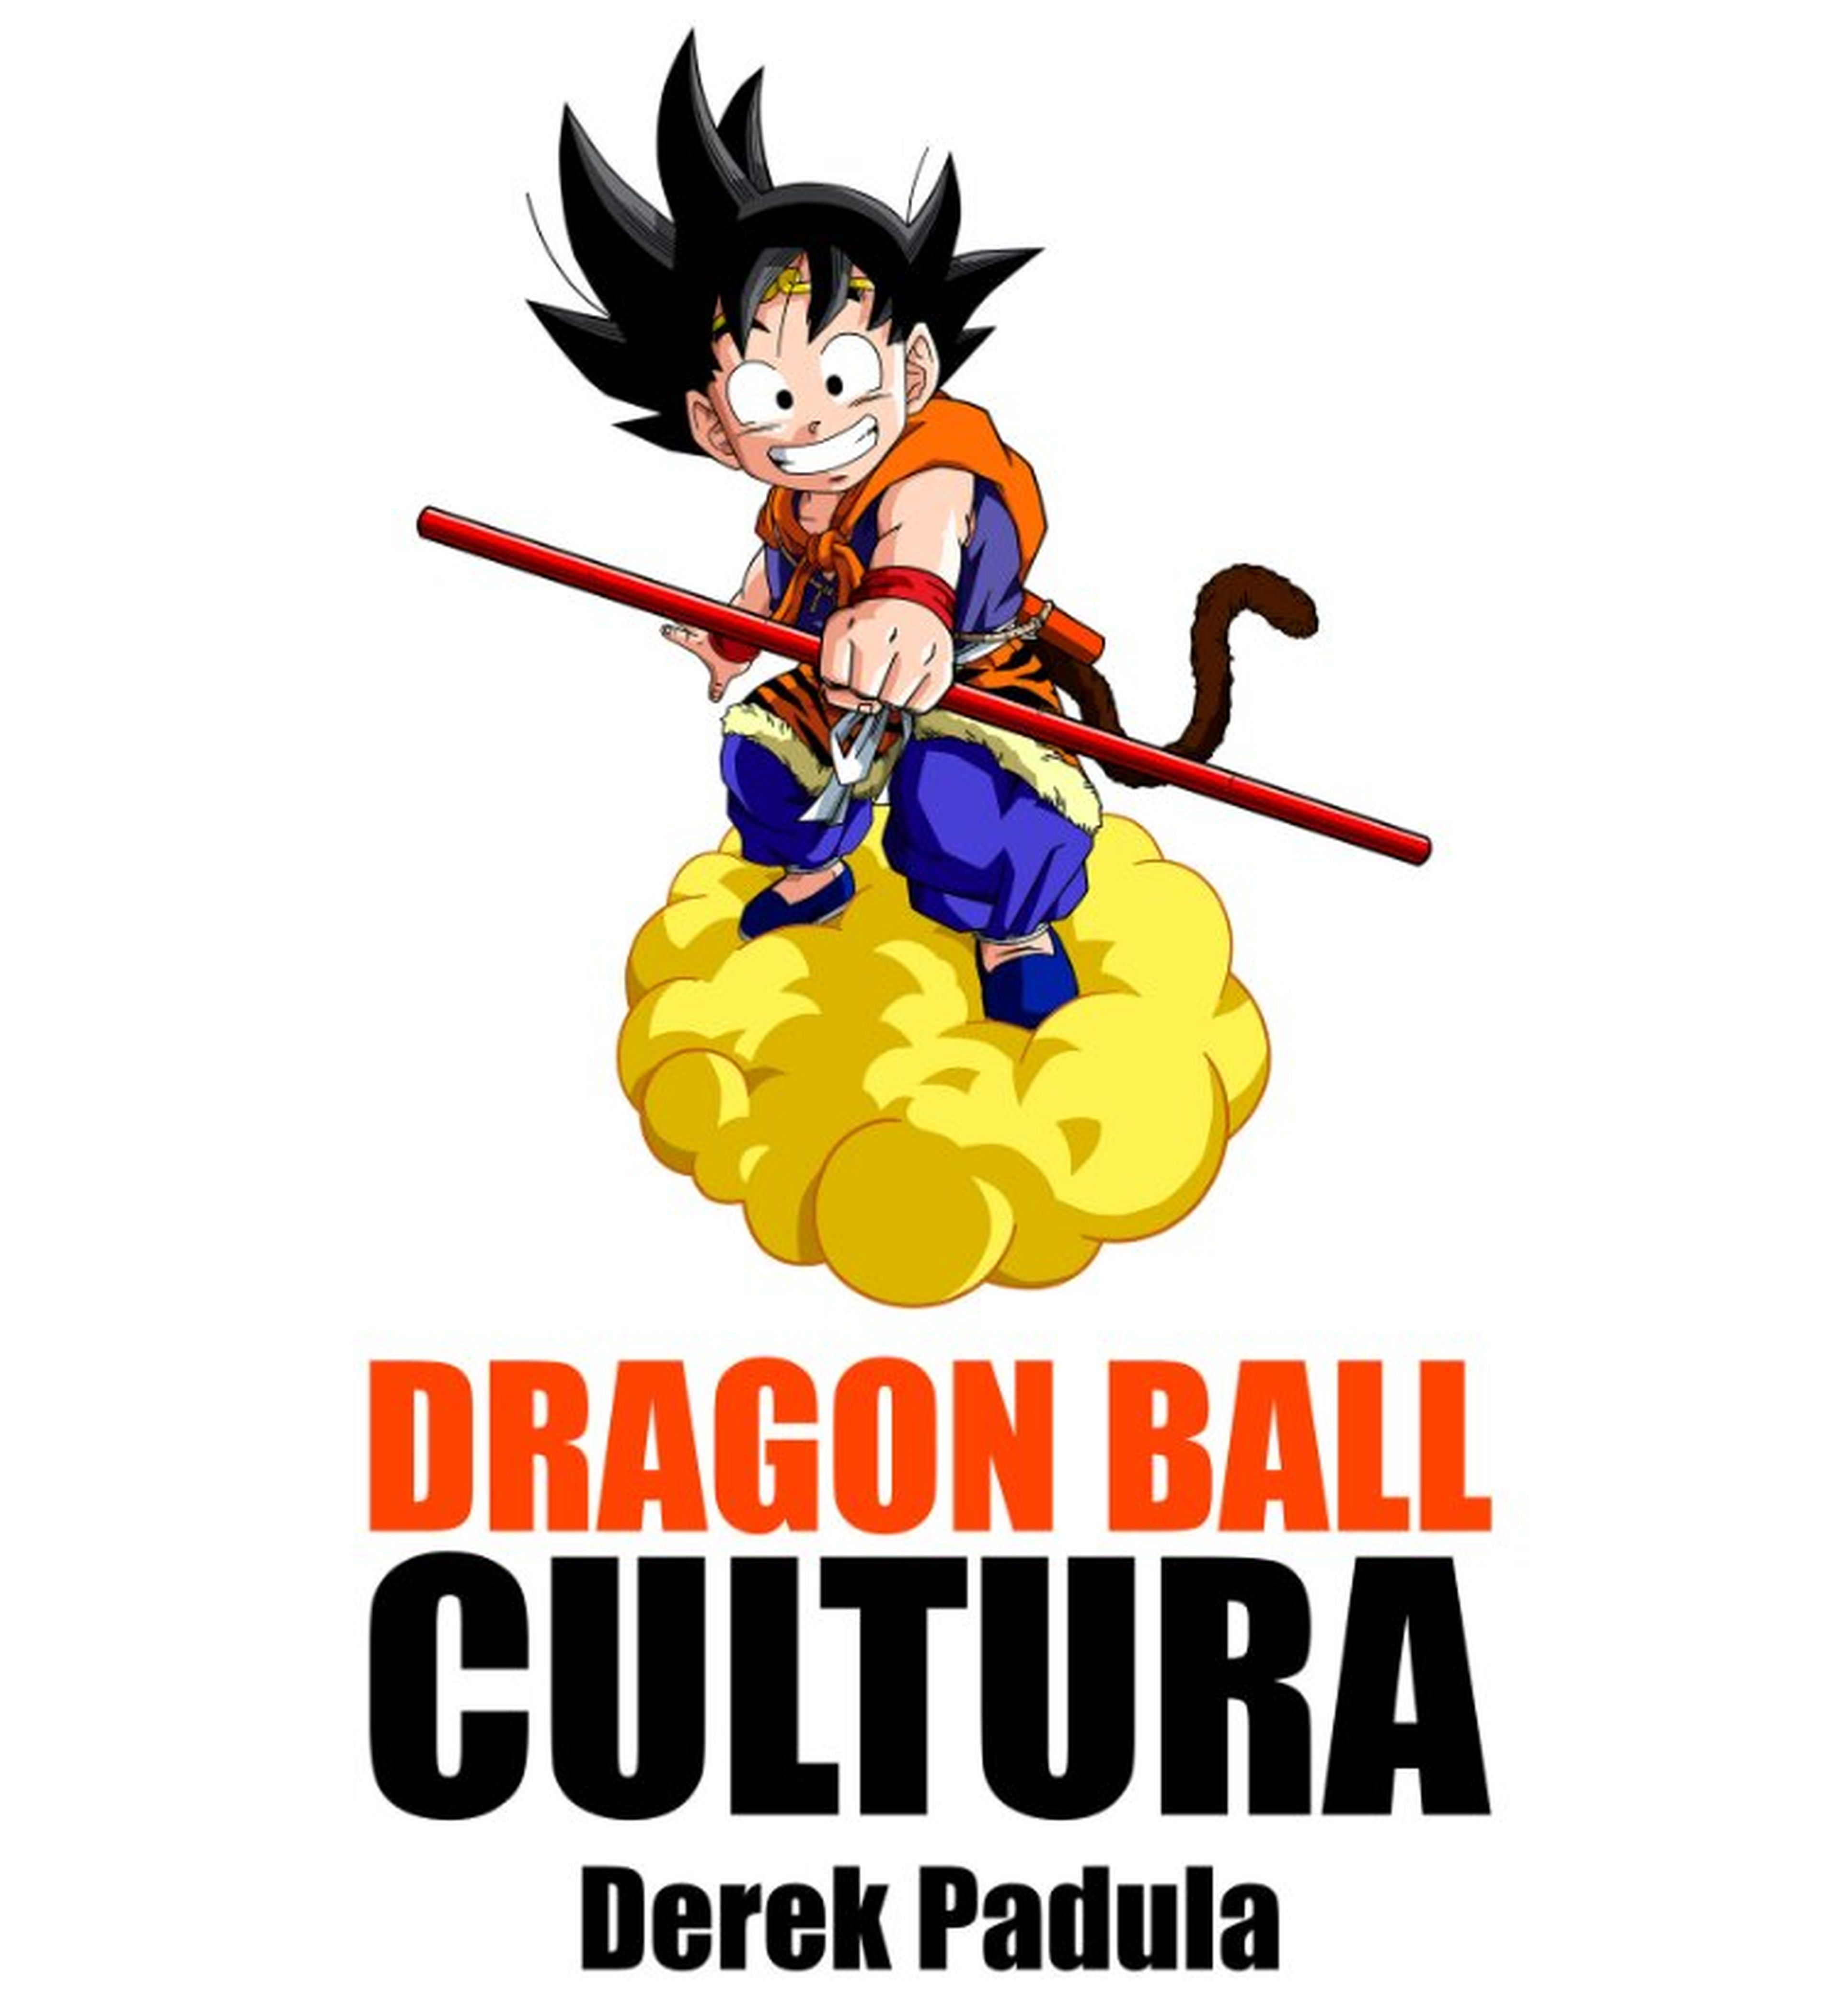 Dragon Ball Cultura 2 - El segundo libro de la antología cultural de Derek Padula ya está disponible en español y en formato físico